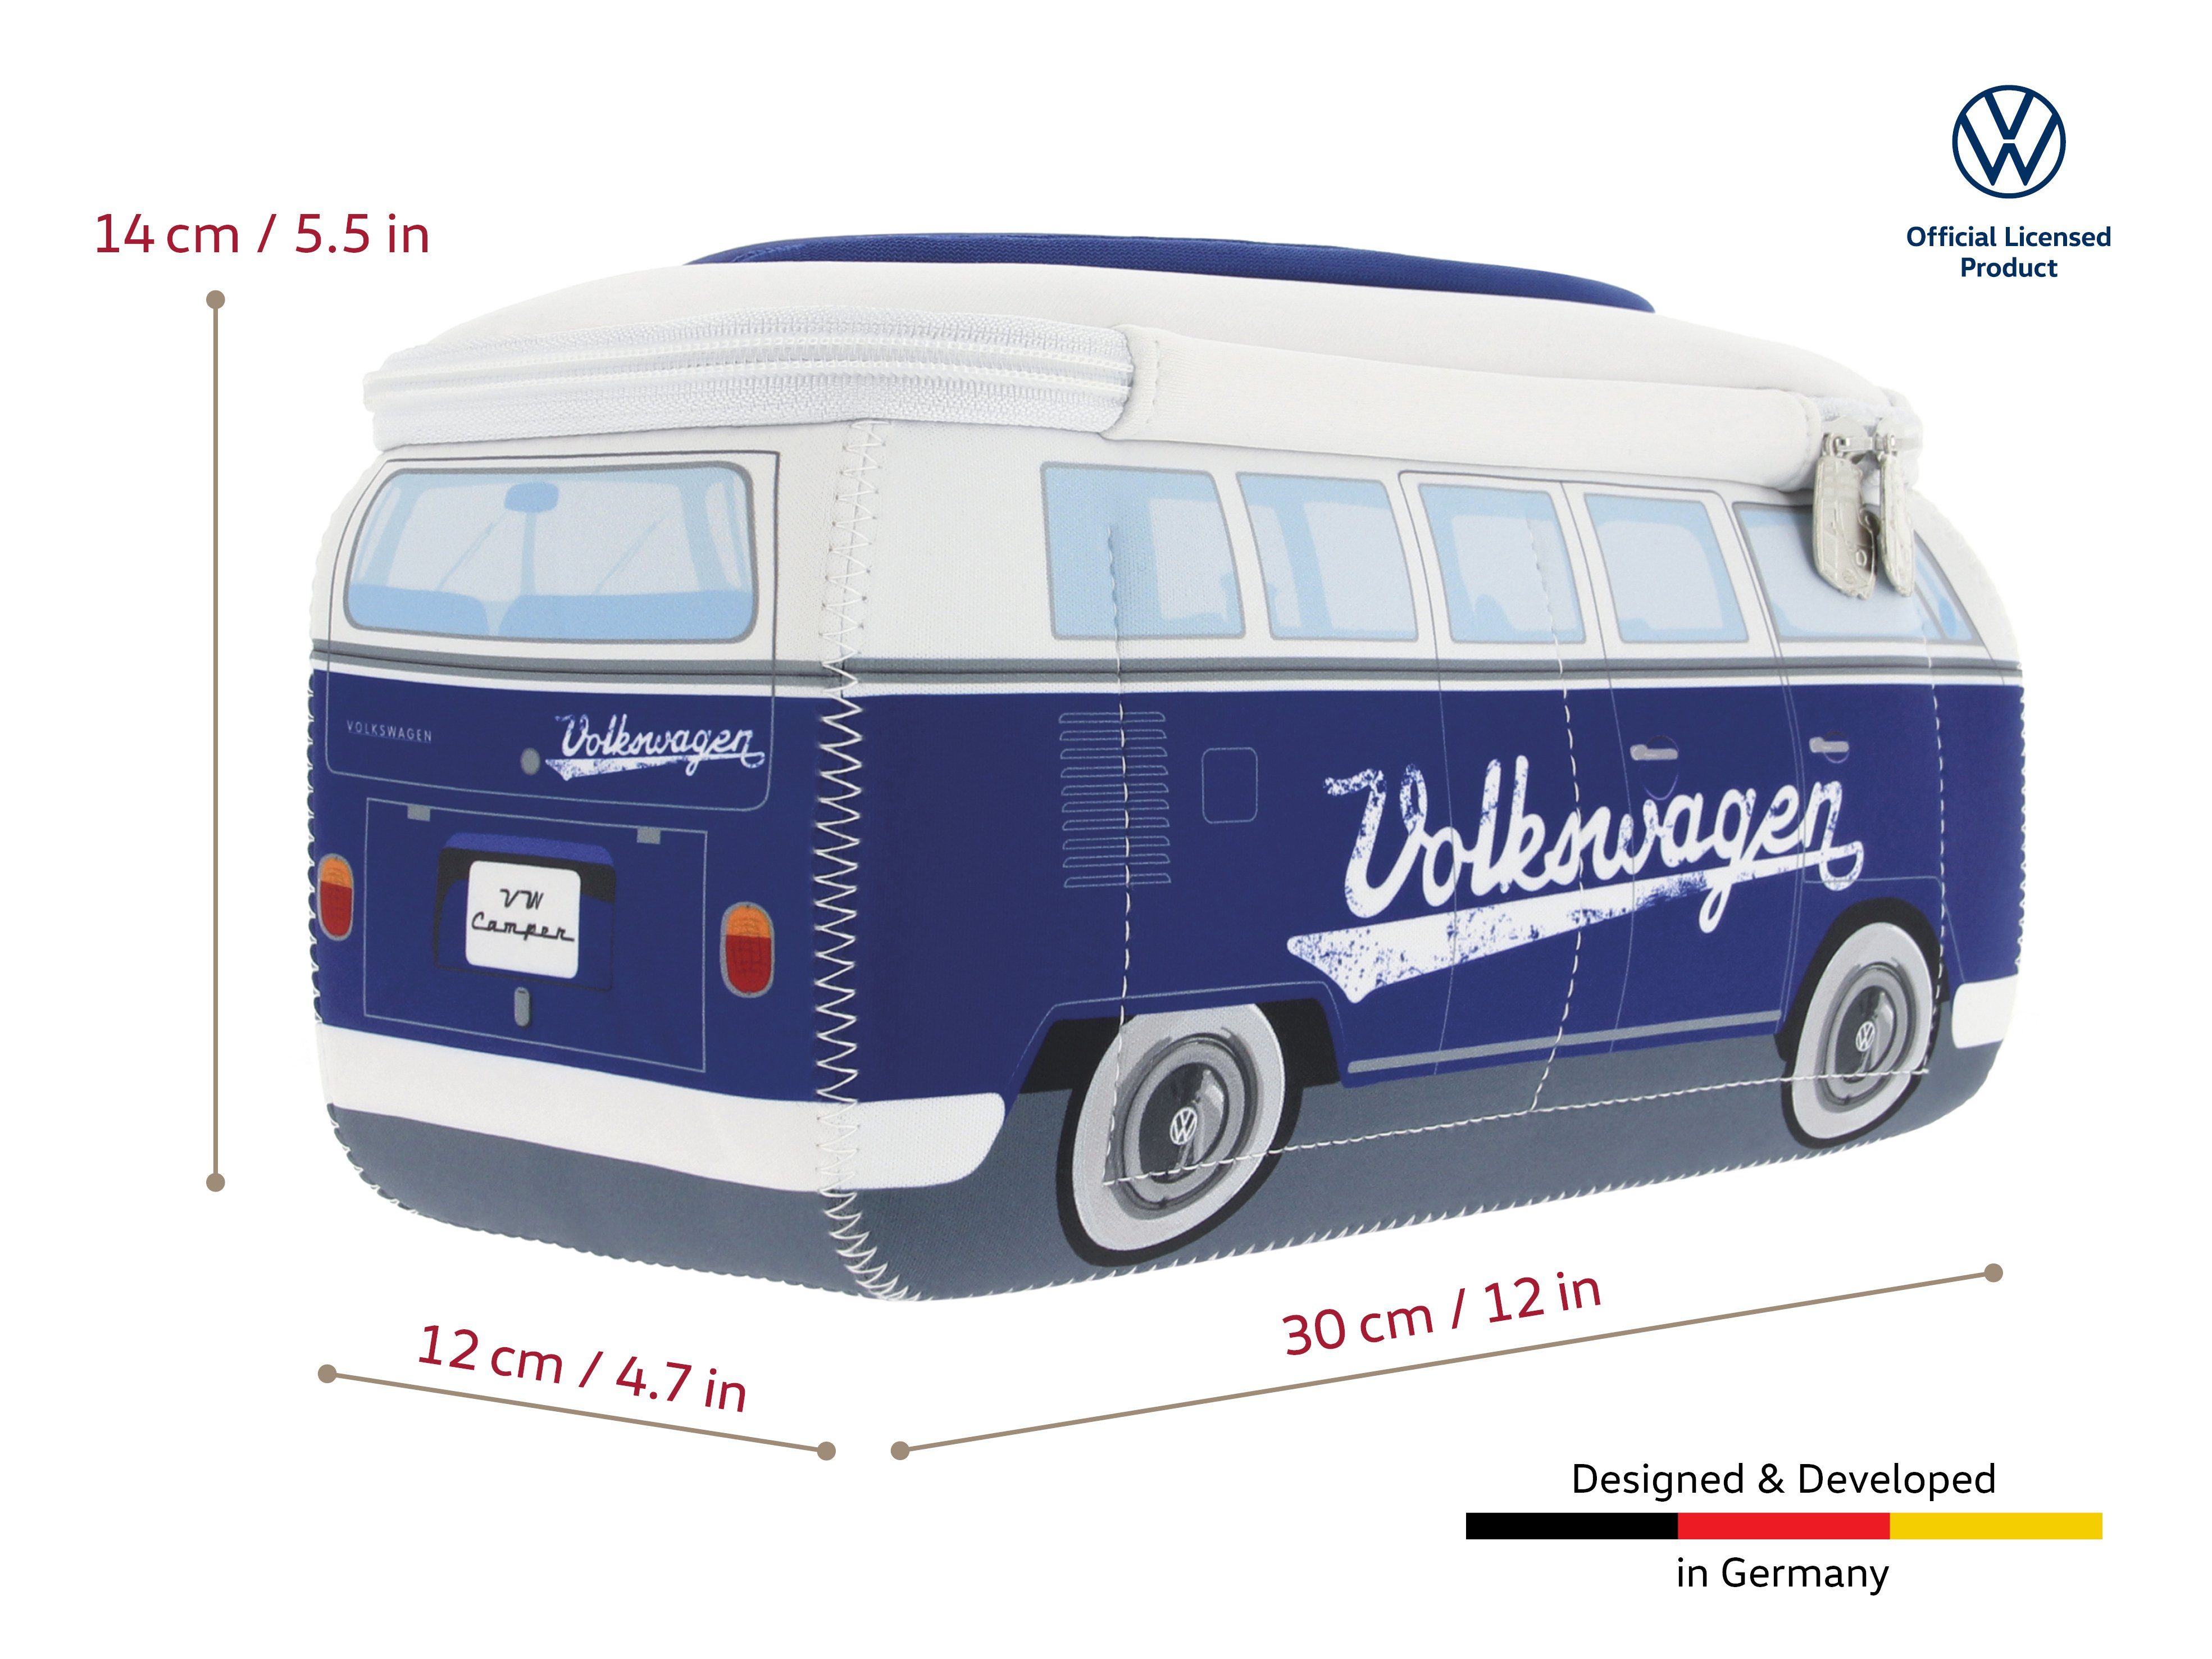 VW Design BRISA im Kulturbeutel Neopren Reisebeutel, Bus Schriftzug/Blau Kosmetiktasche Collection Bulli Volkswagen Schminktasche, T1 by